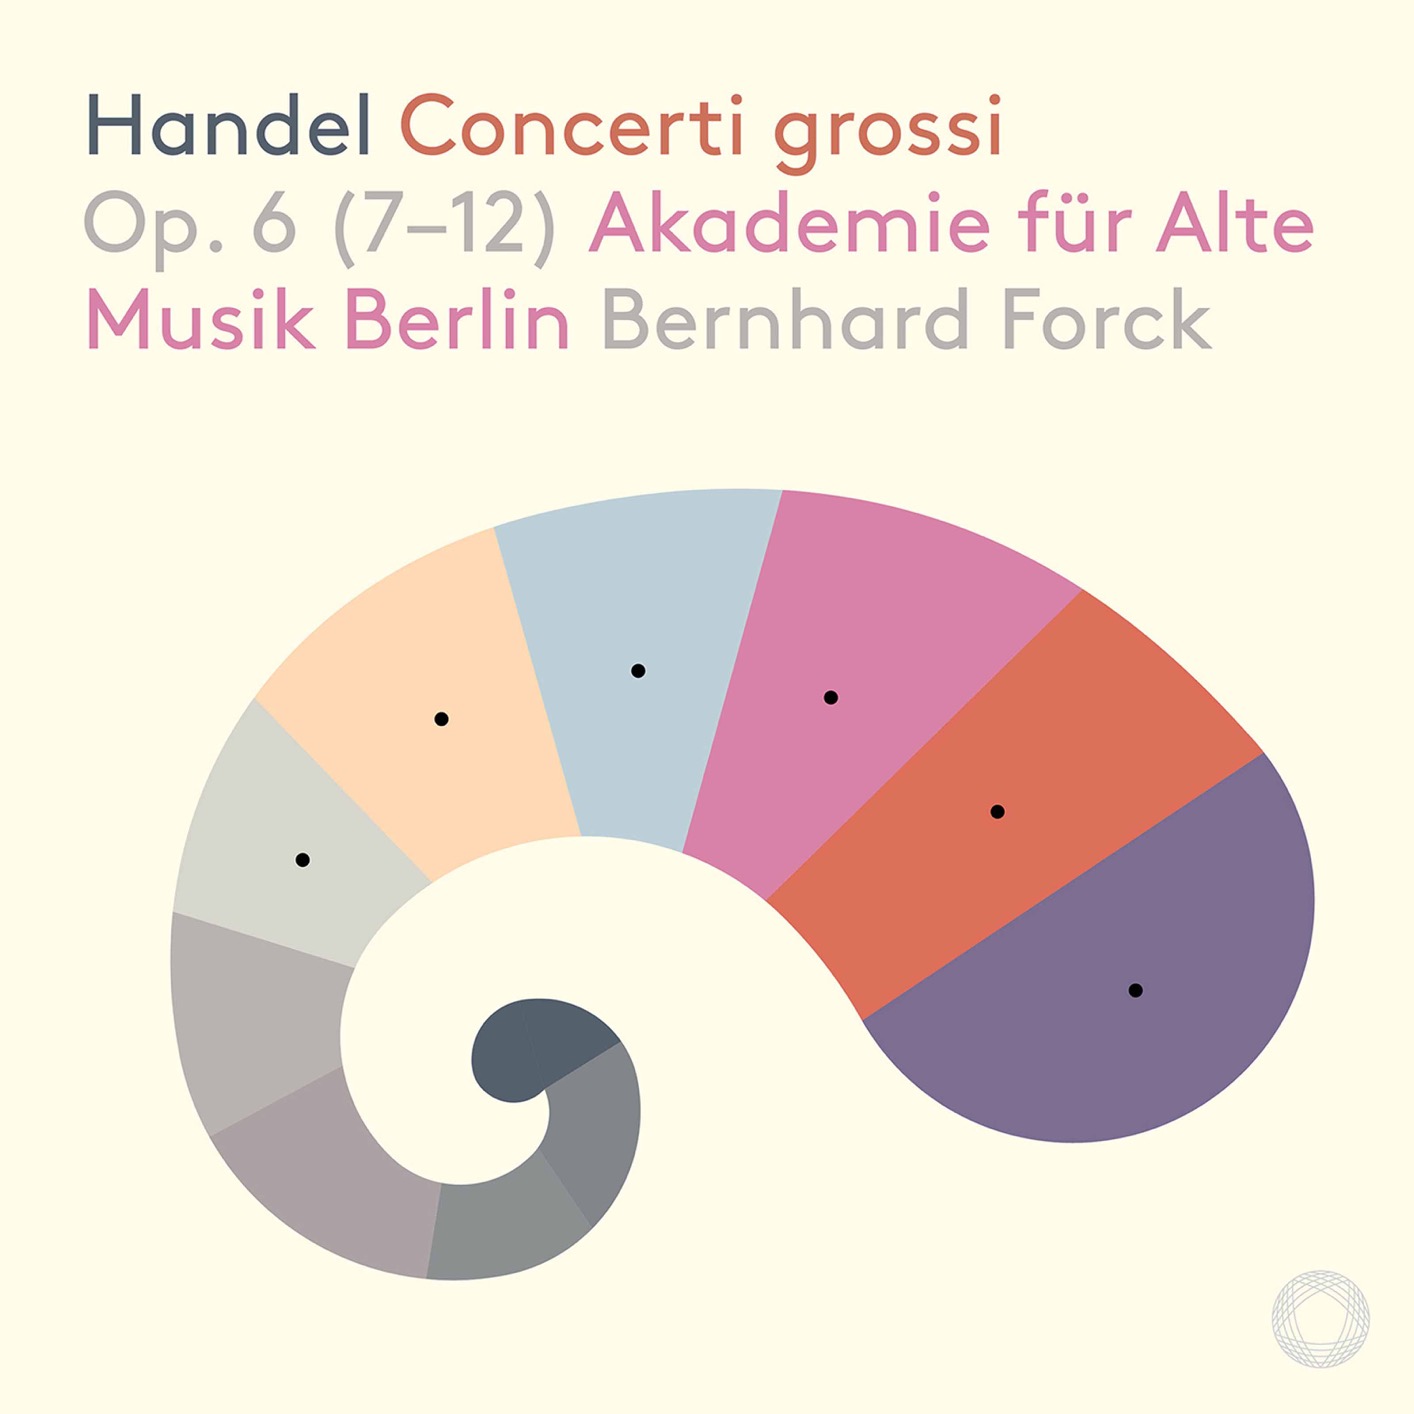 Akademie fur Alte Musik Berlin & Bernhard Forck - Handel: 12 Concerti grossi, Op. 6 Nos. 7-12 (2020) [FLAC 24bit/96kHz]